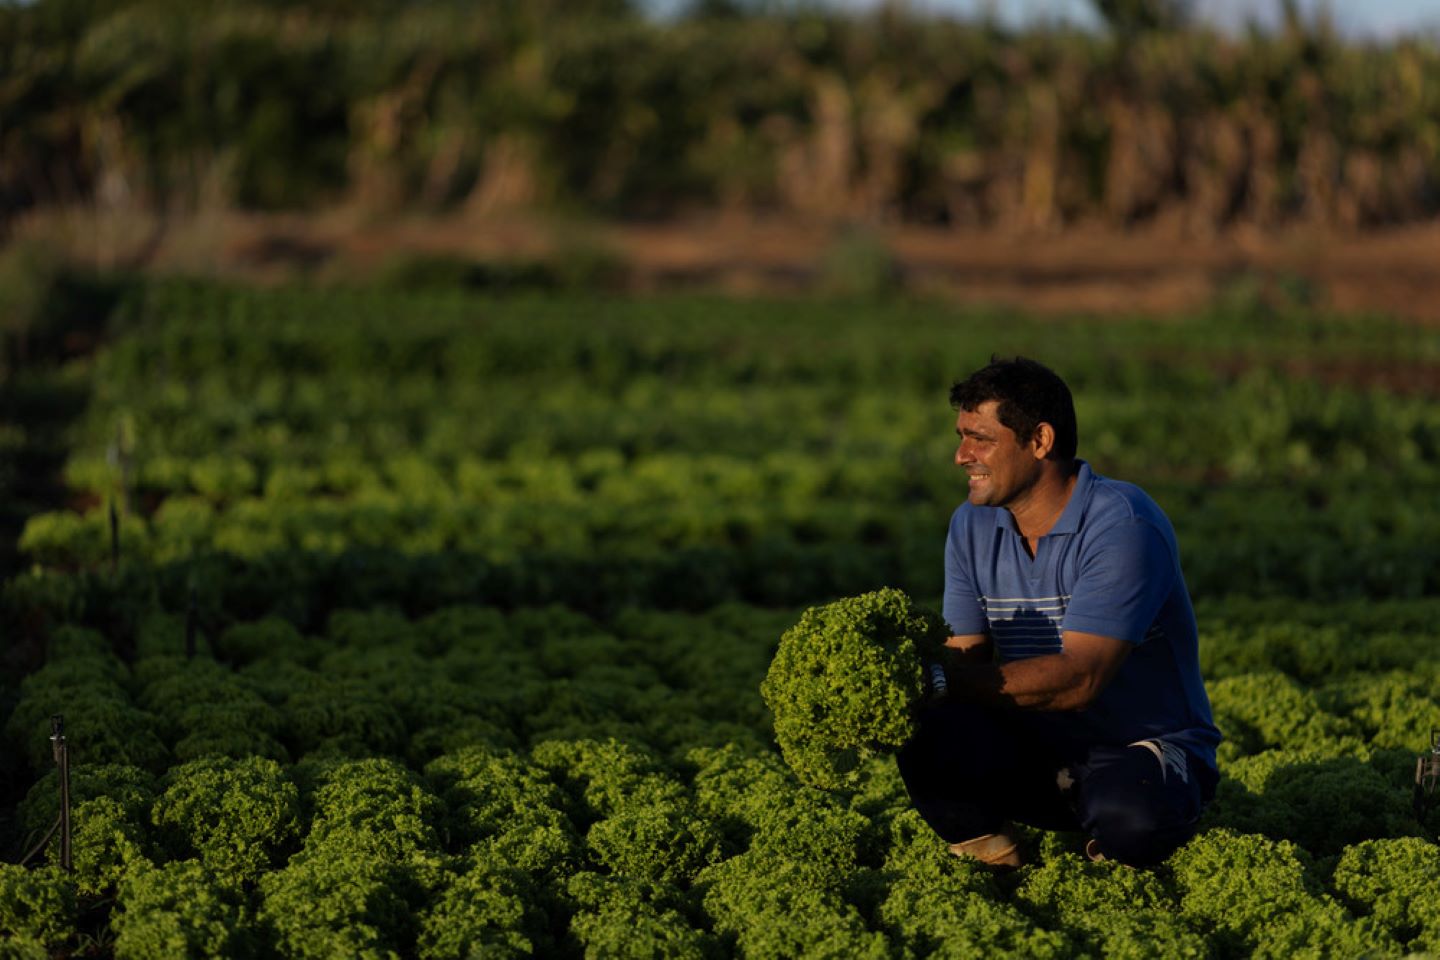 Tiago inspects his lettuce crop on his farm in Mossoró, Brazil. © IFAD/Ueslei Marcelino 